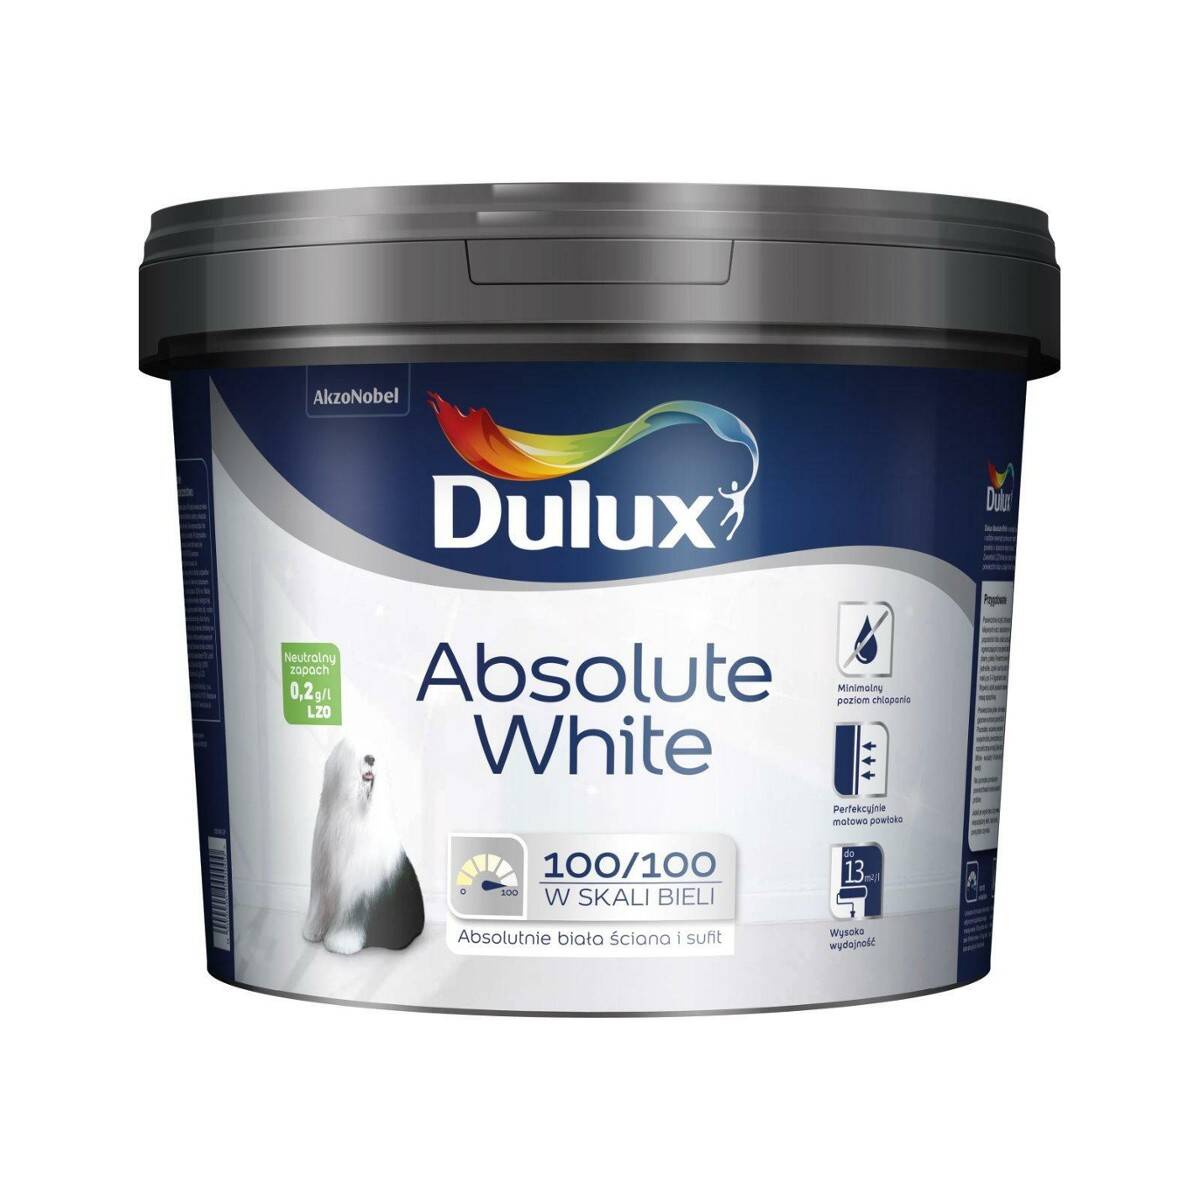 Dulux Absolute White biała farba emulsyjna do ścian i sufitów 9l